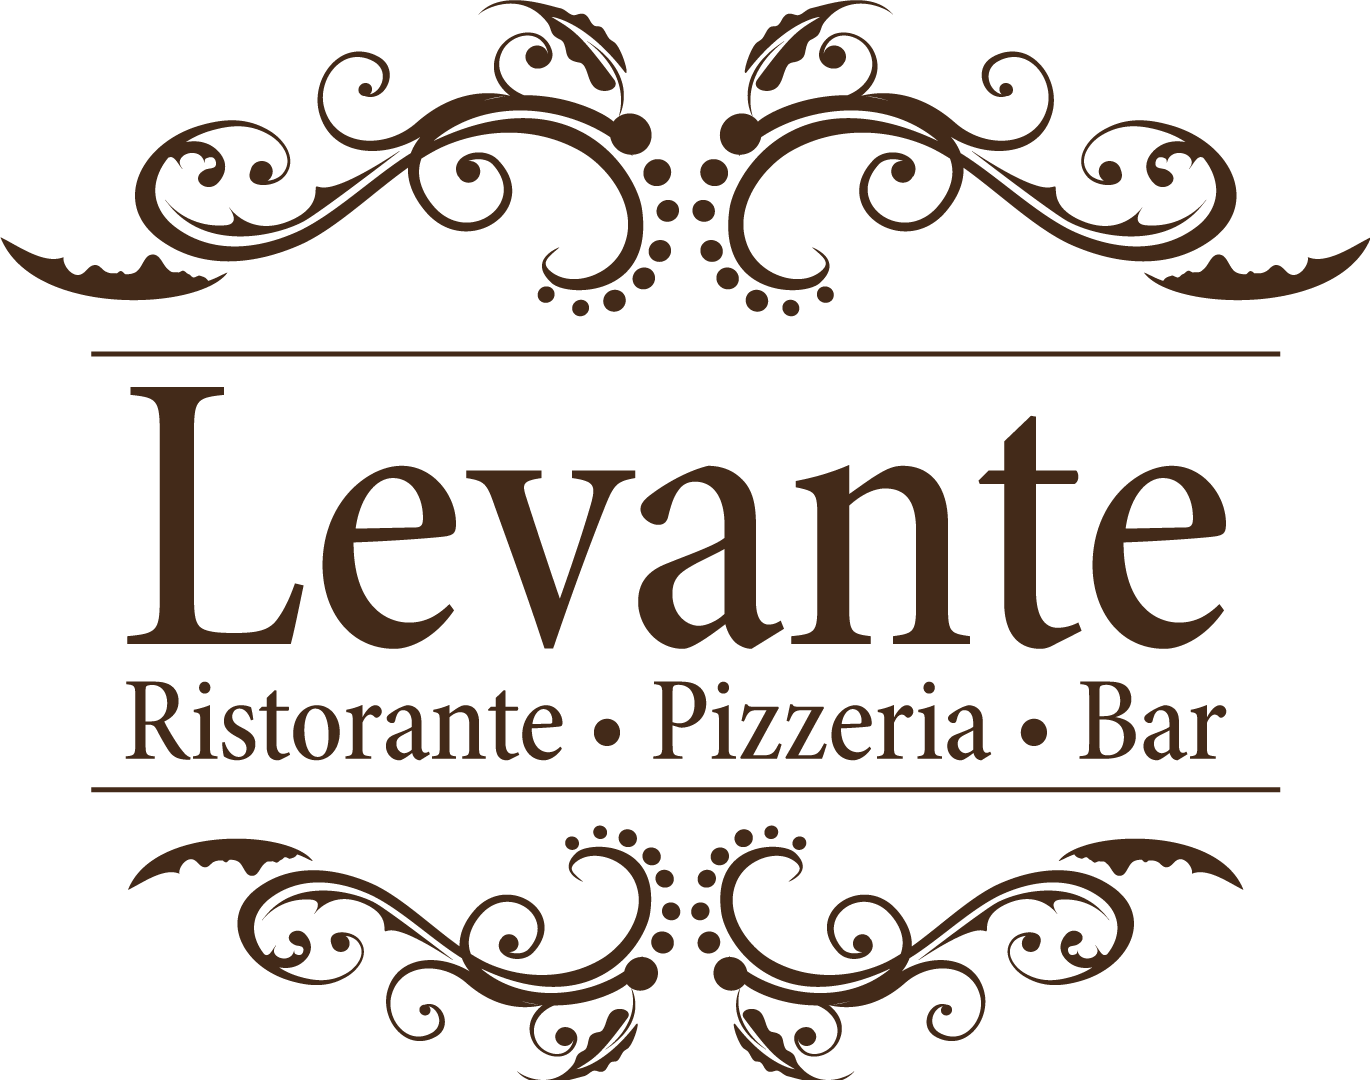 Ristorante Pizzeria Bar Levante